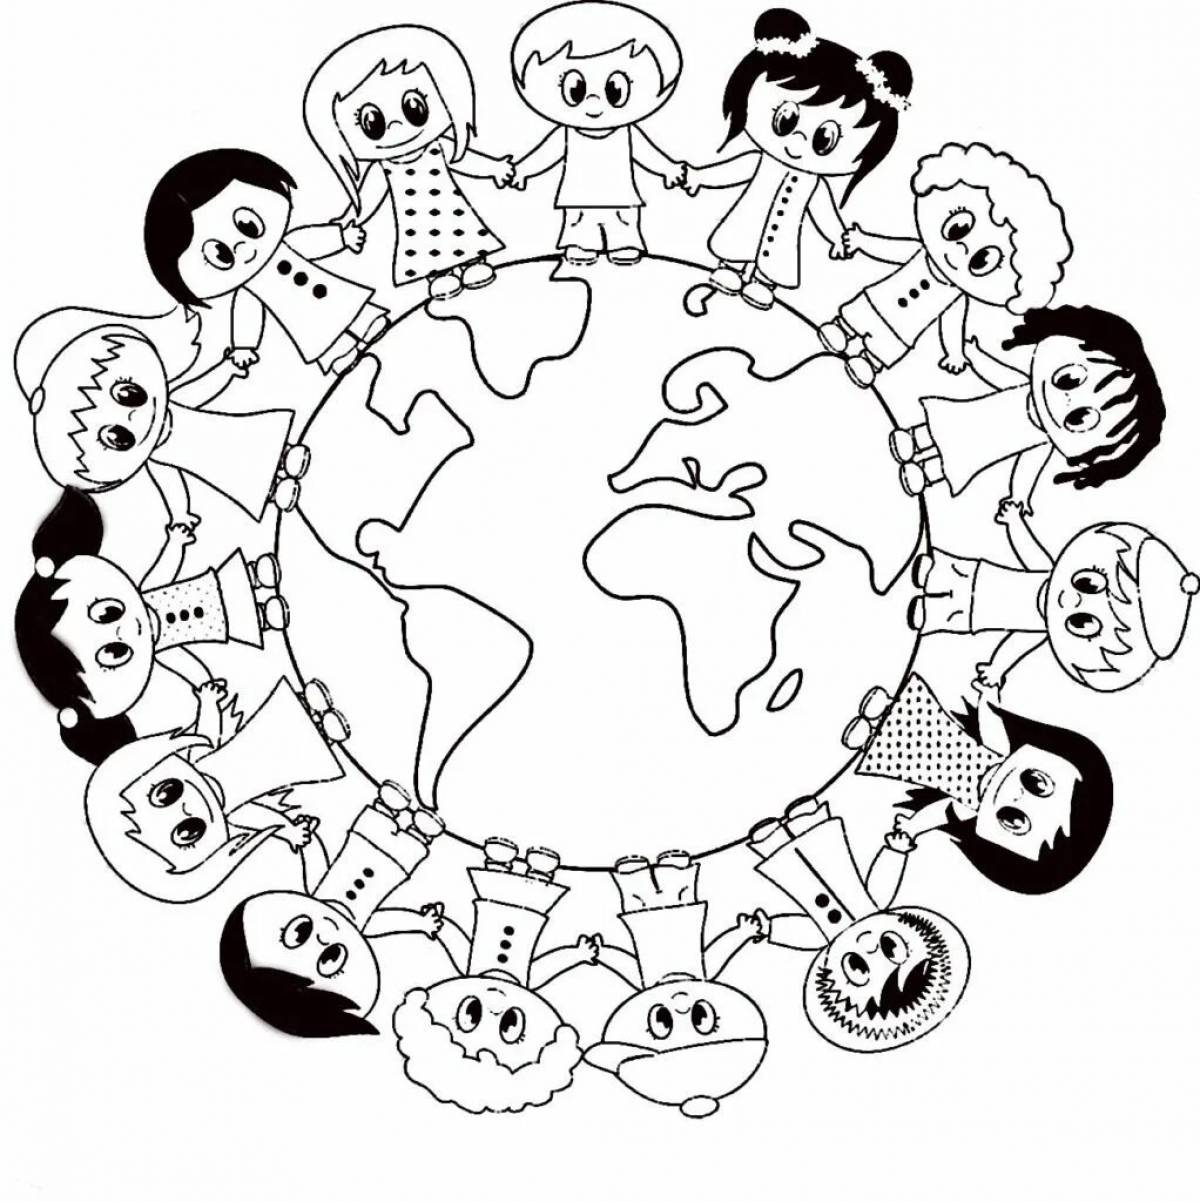 Дружба народов мир на земле рисунки легкие - фото и картинки азинский.рф